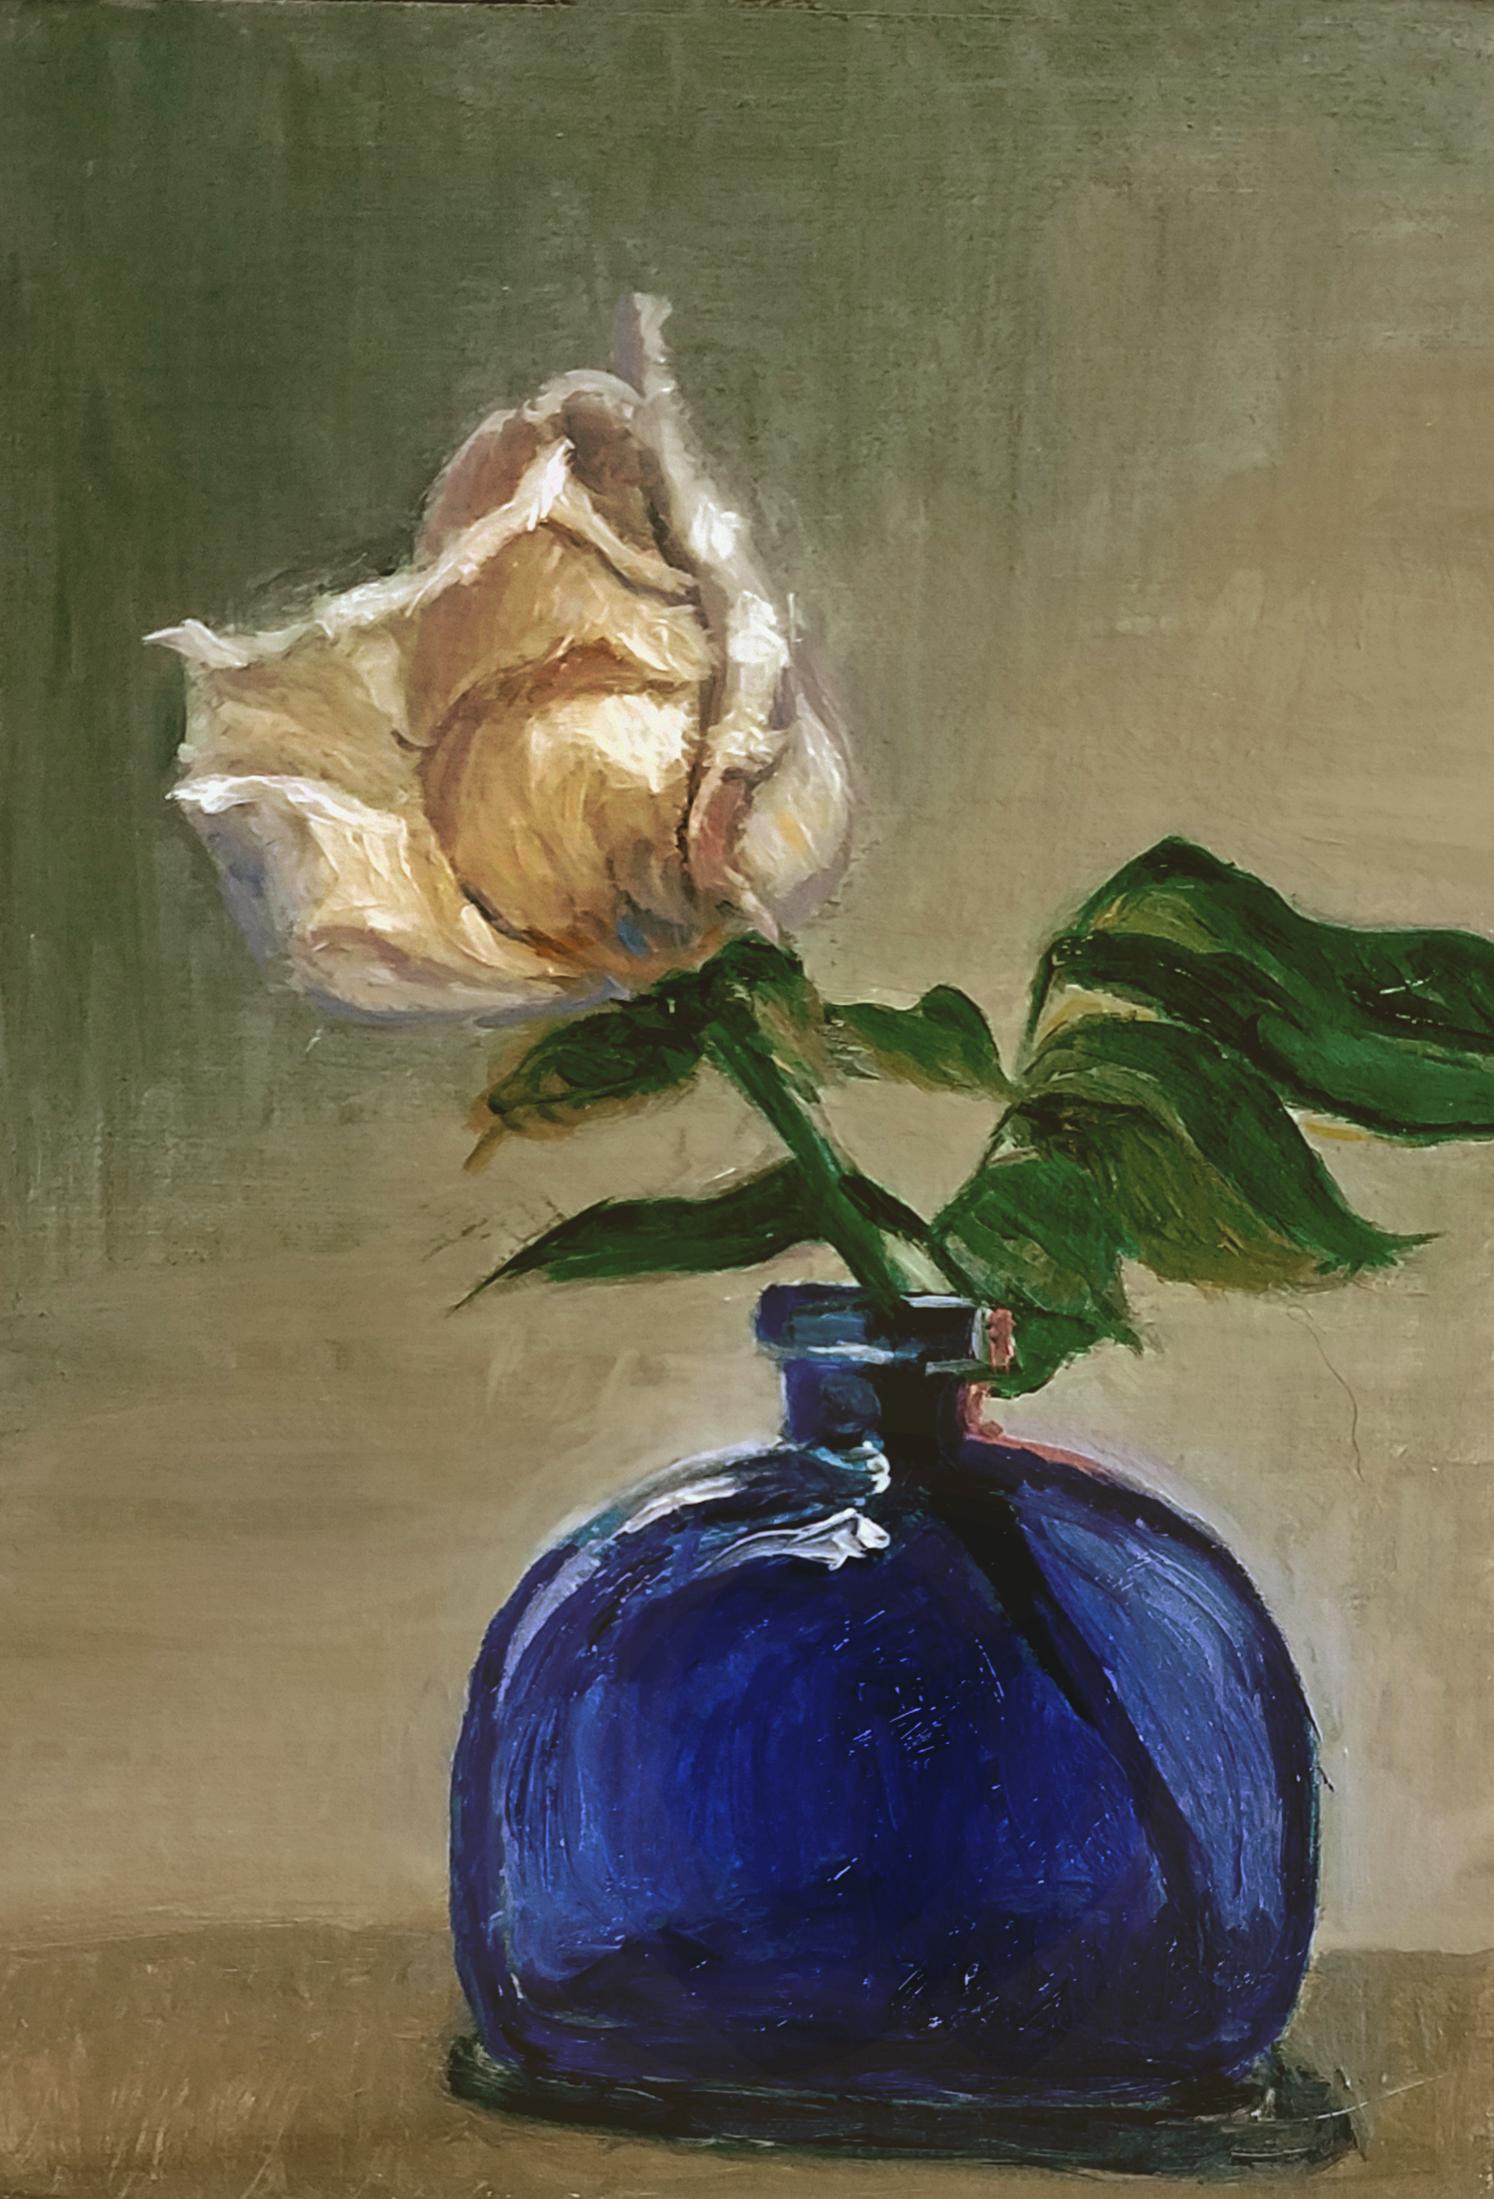 Still-Life Painting Katherine Kean - Nature morte florale : Rose blanche dans une bouteille bleue